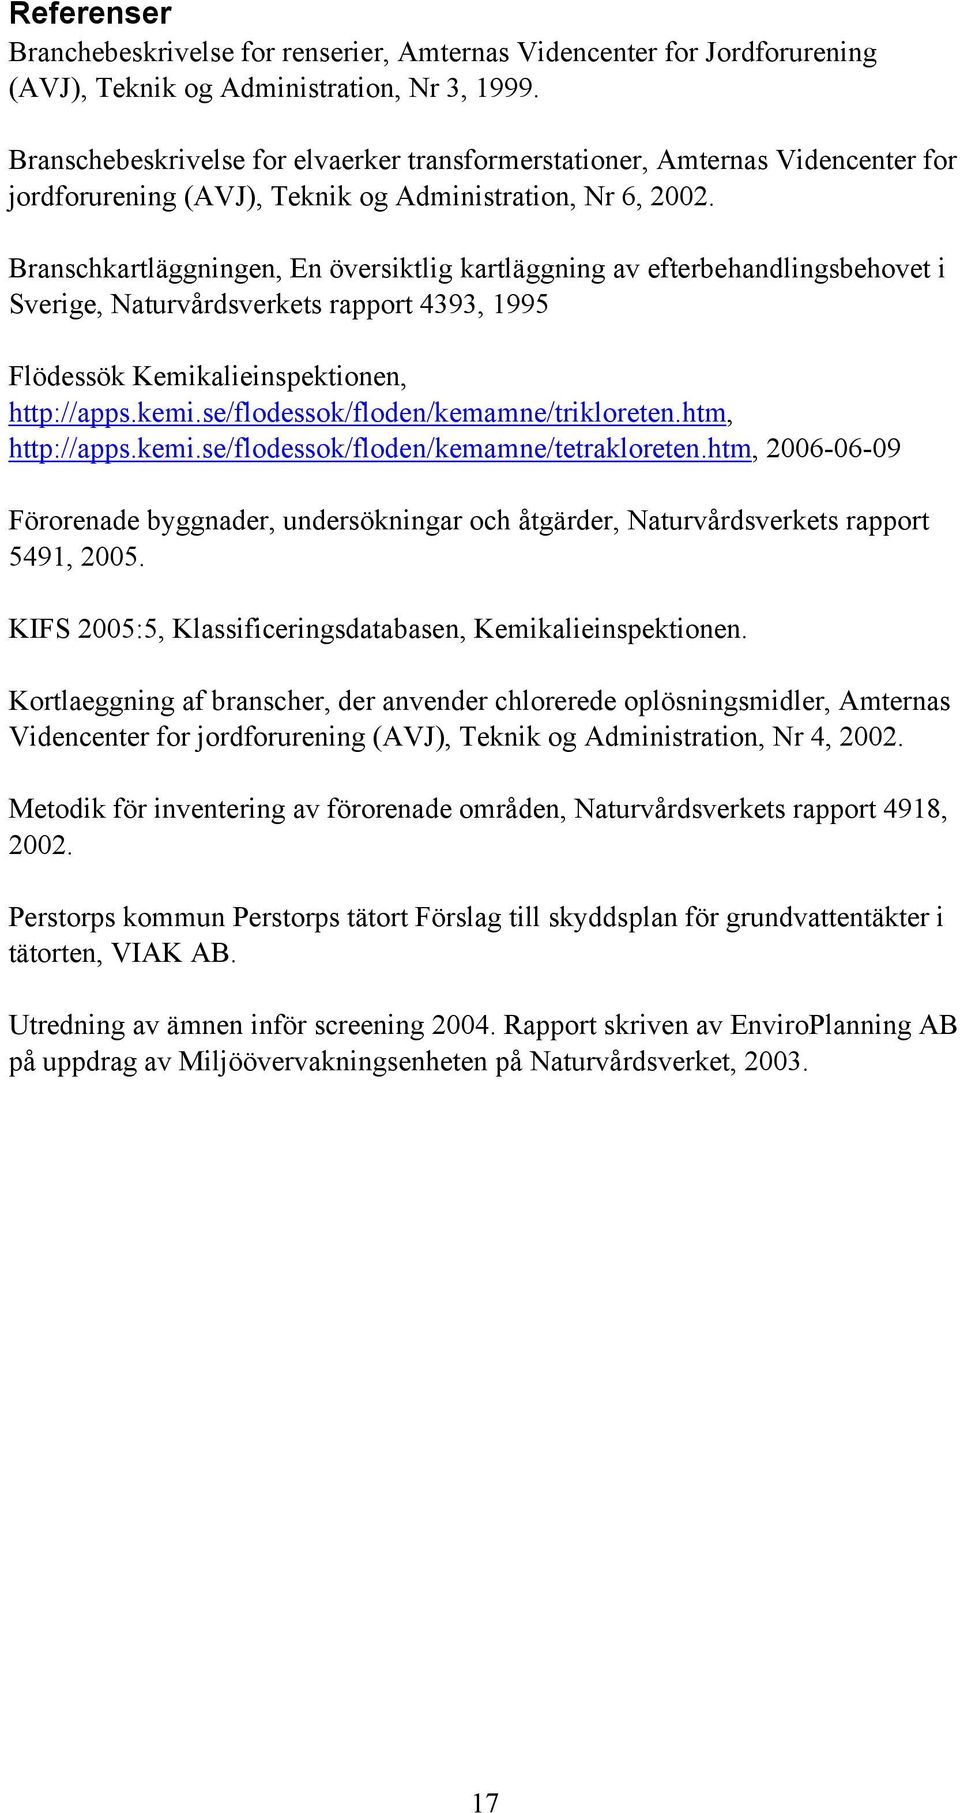 Branschkartläggningen, En översiktlig kartläggning av efterbehandlingsbehovet i Sverige, Naturvårdsverkets rapport 4393, 1995 Flödessök Kemikalieinspektionen, http://apps.kemi.